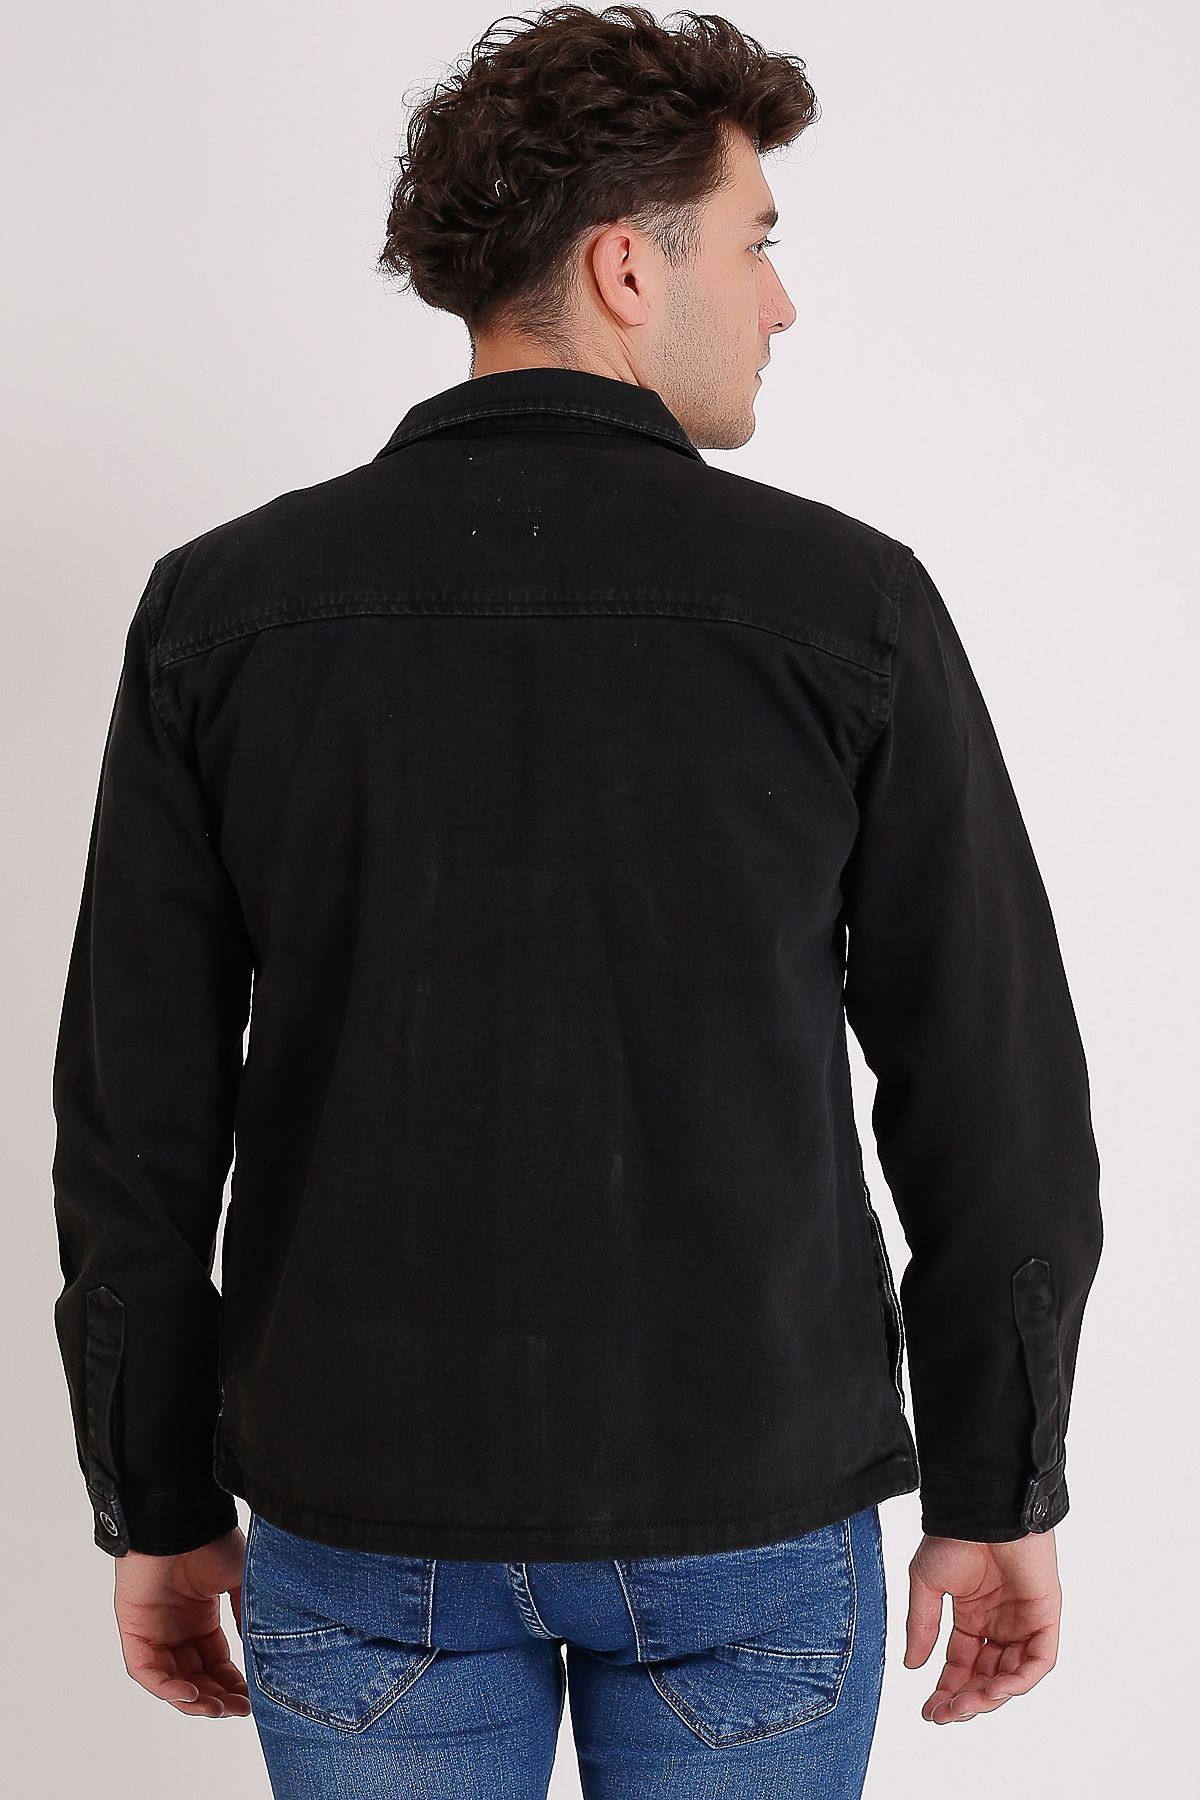 Premium Pamuklu Siyah Ceket Cep Fermuar Ve Detay Baskı